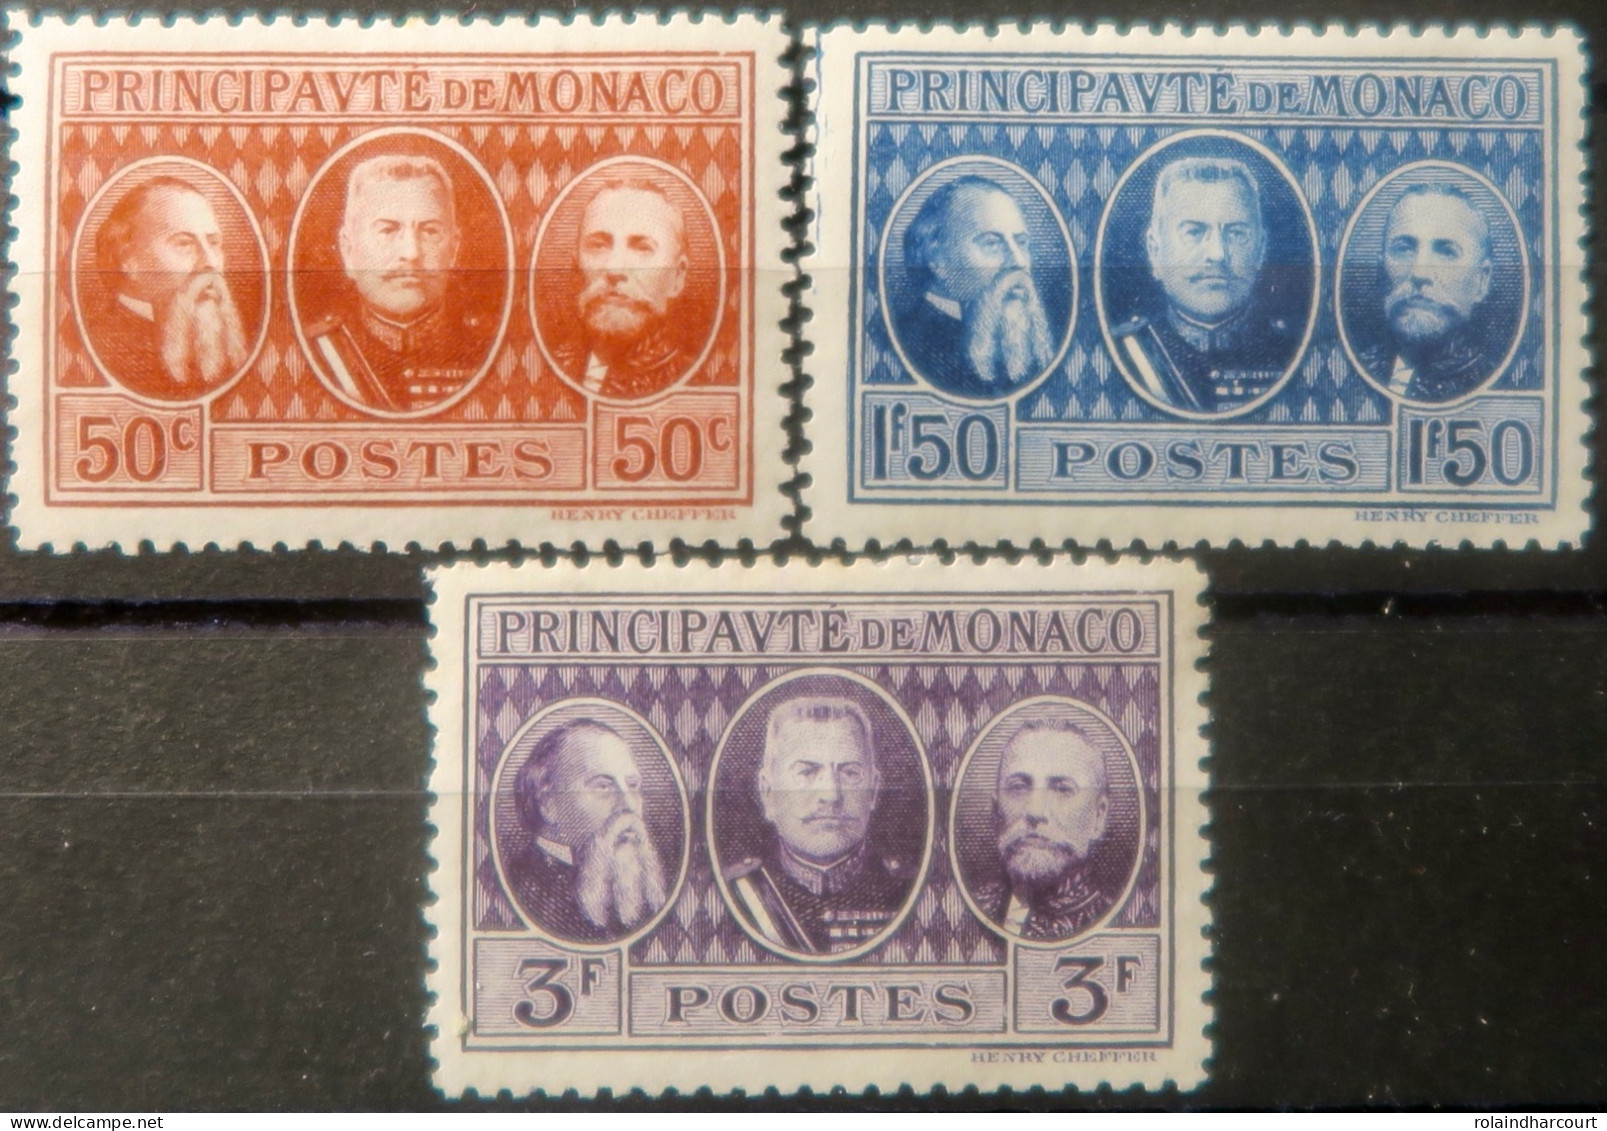 R2253/655 - MONACO - 1928 - Charles III / Louis II / Albert 1er - N°111 à 113 NEUFS* - Unused Stamps